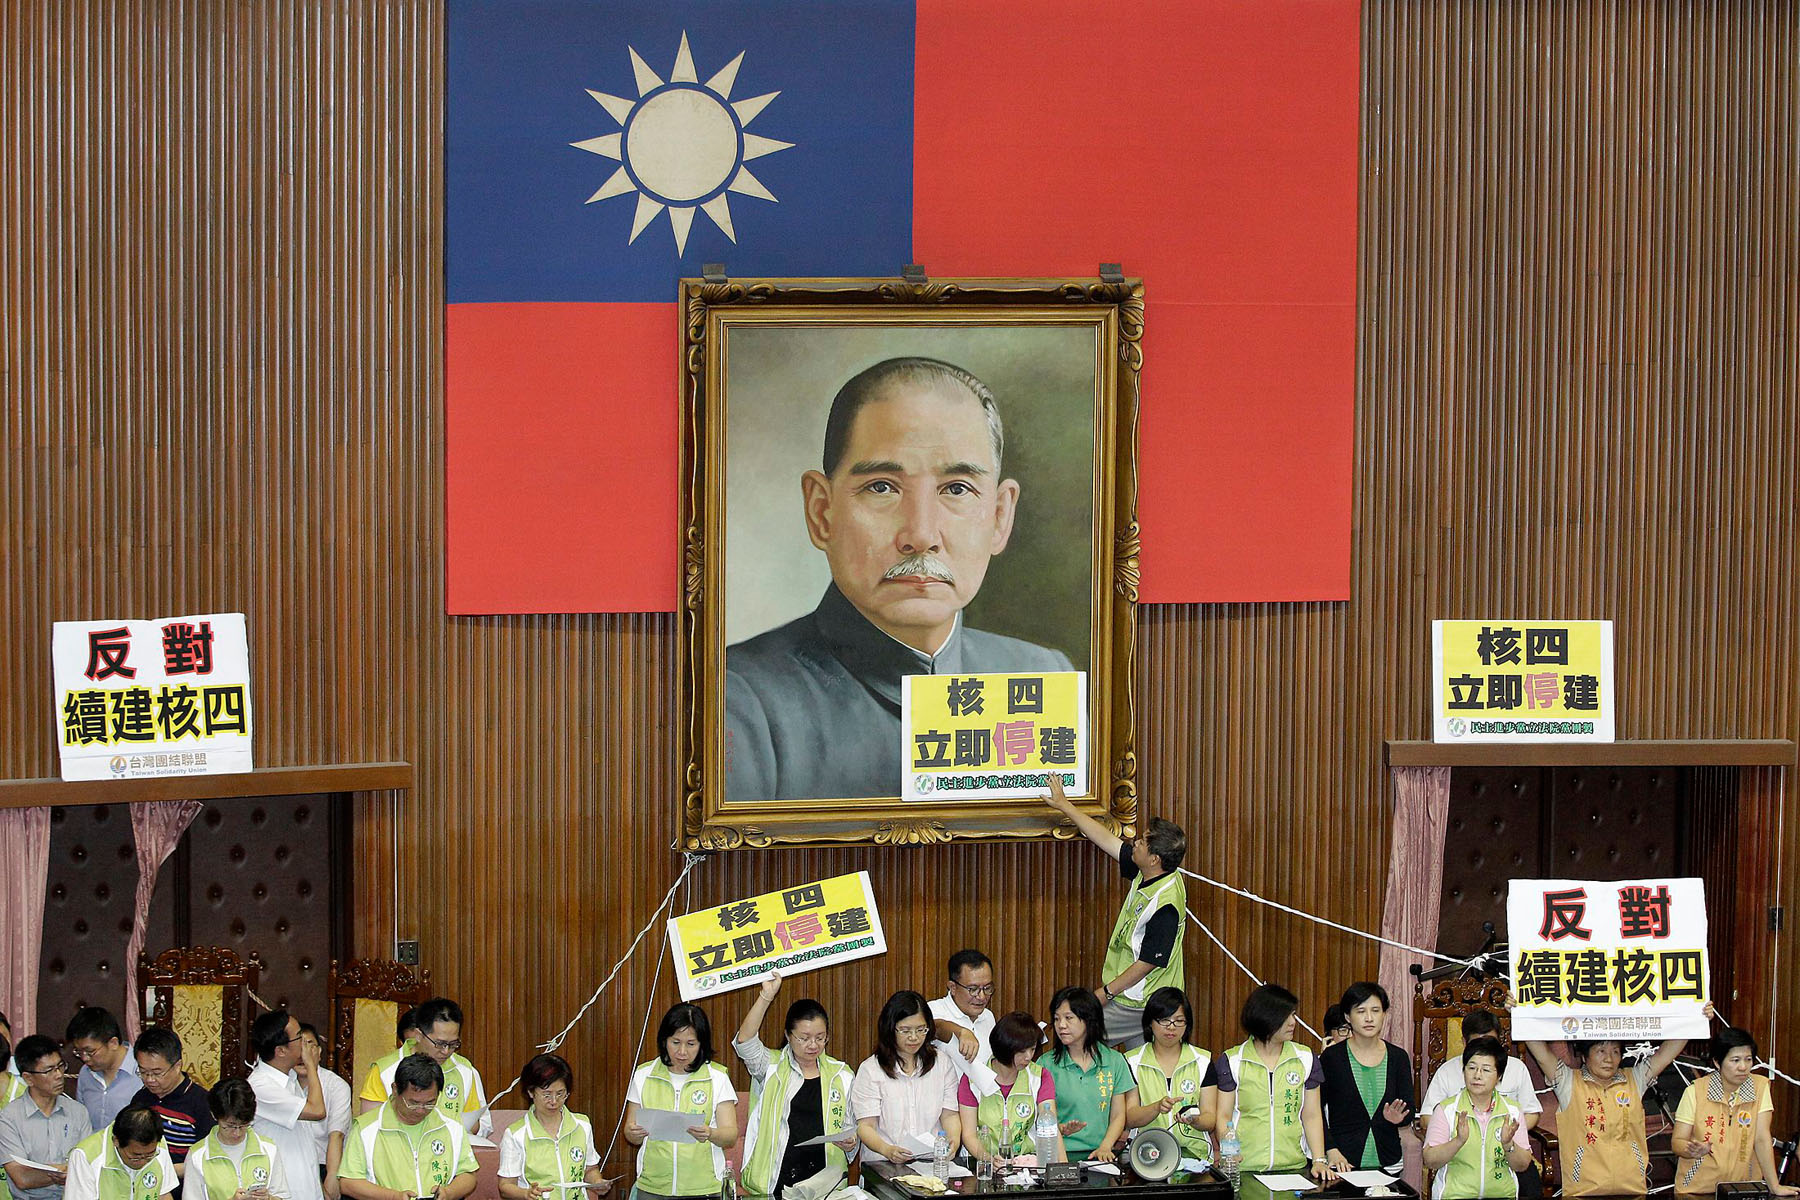 Taiwán. El parlamento acaba de ser escenario de una trifulca entre los legisladores del oficialismo